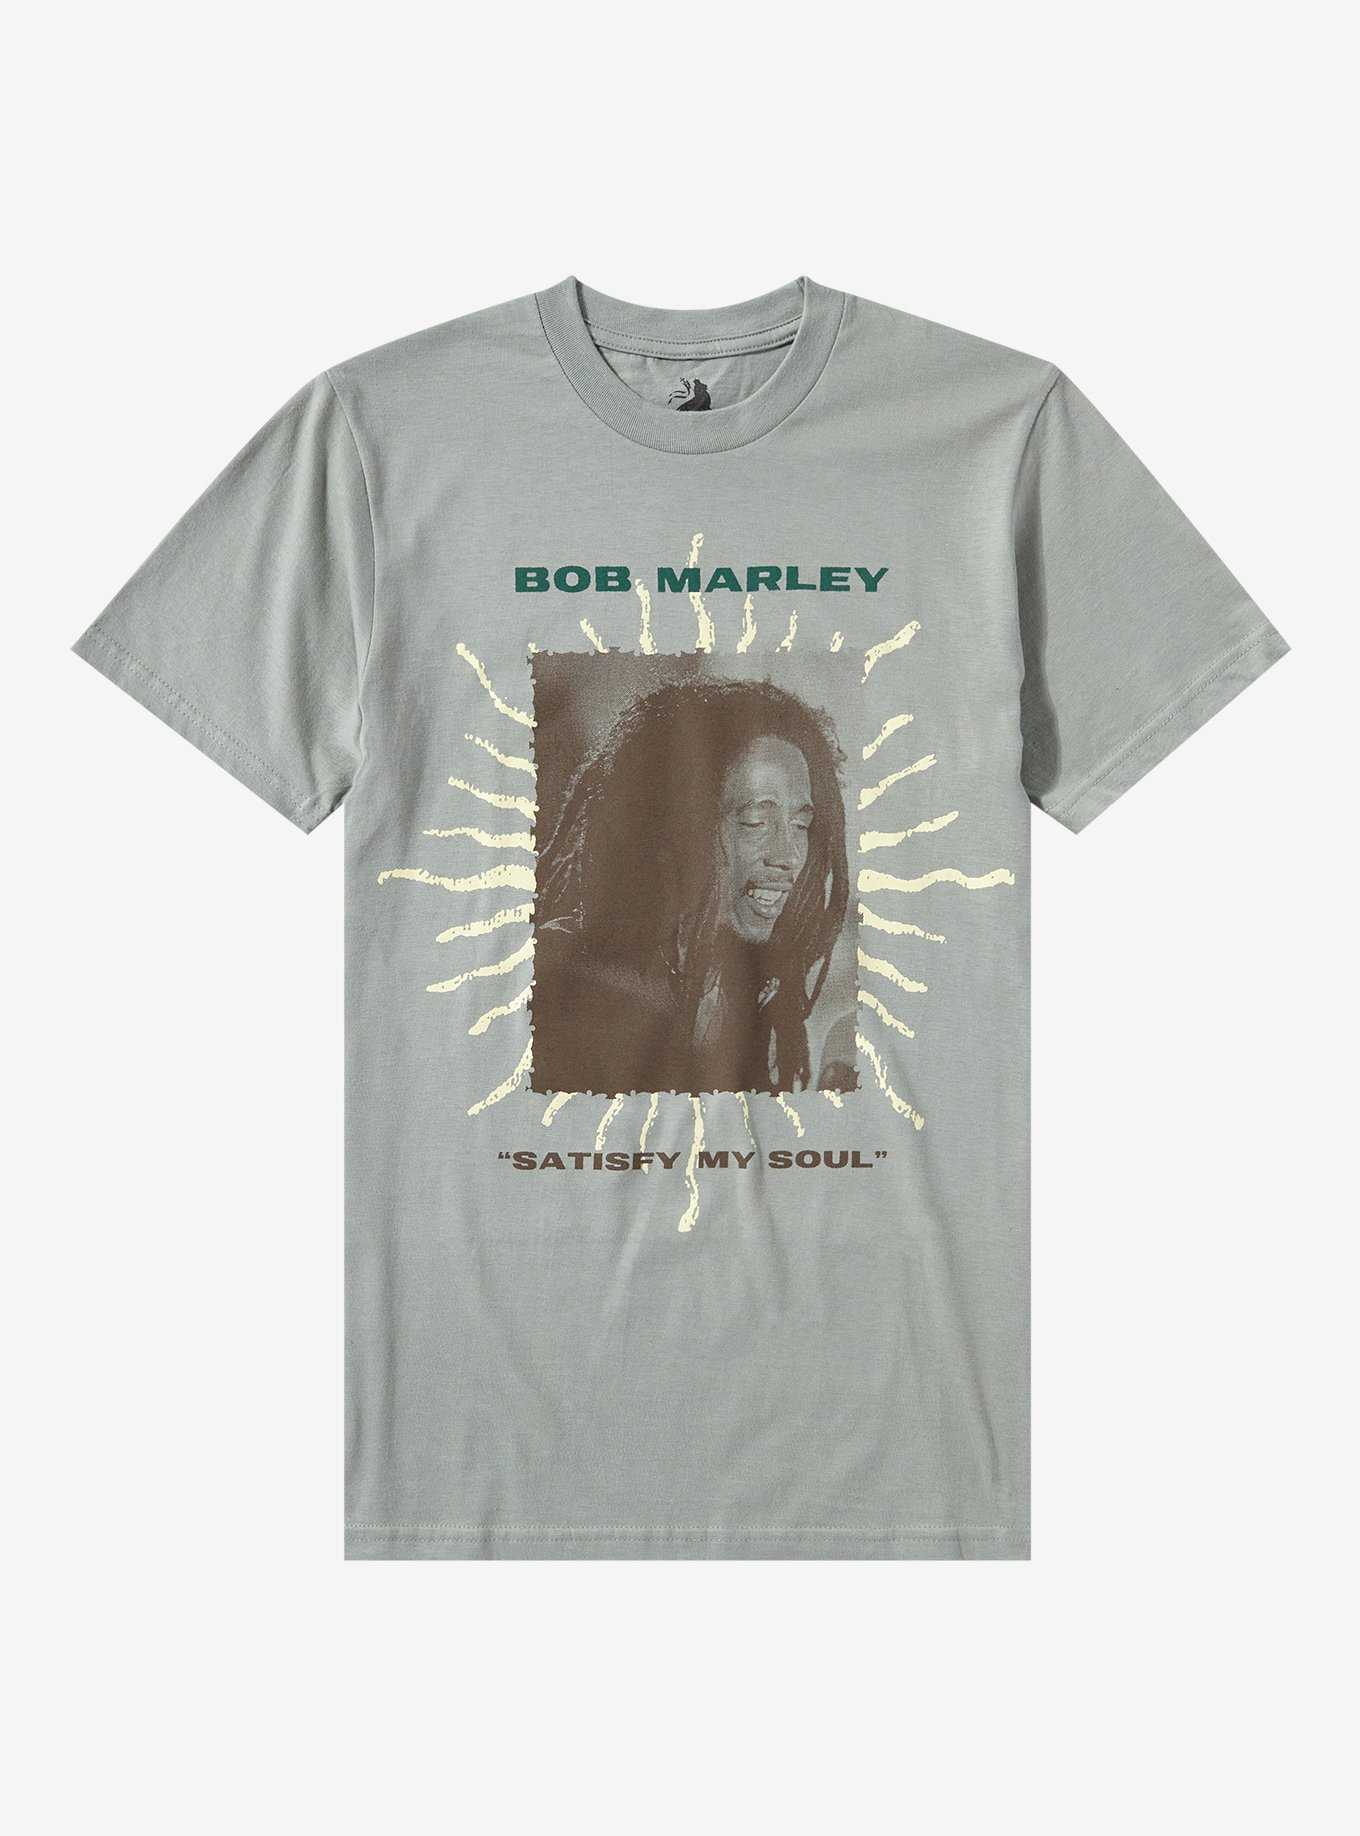 Bob Marley Satisfy My Soul Boyfriend Fit Girls T-Shirt, , hi-res